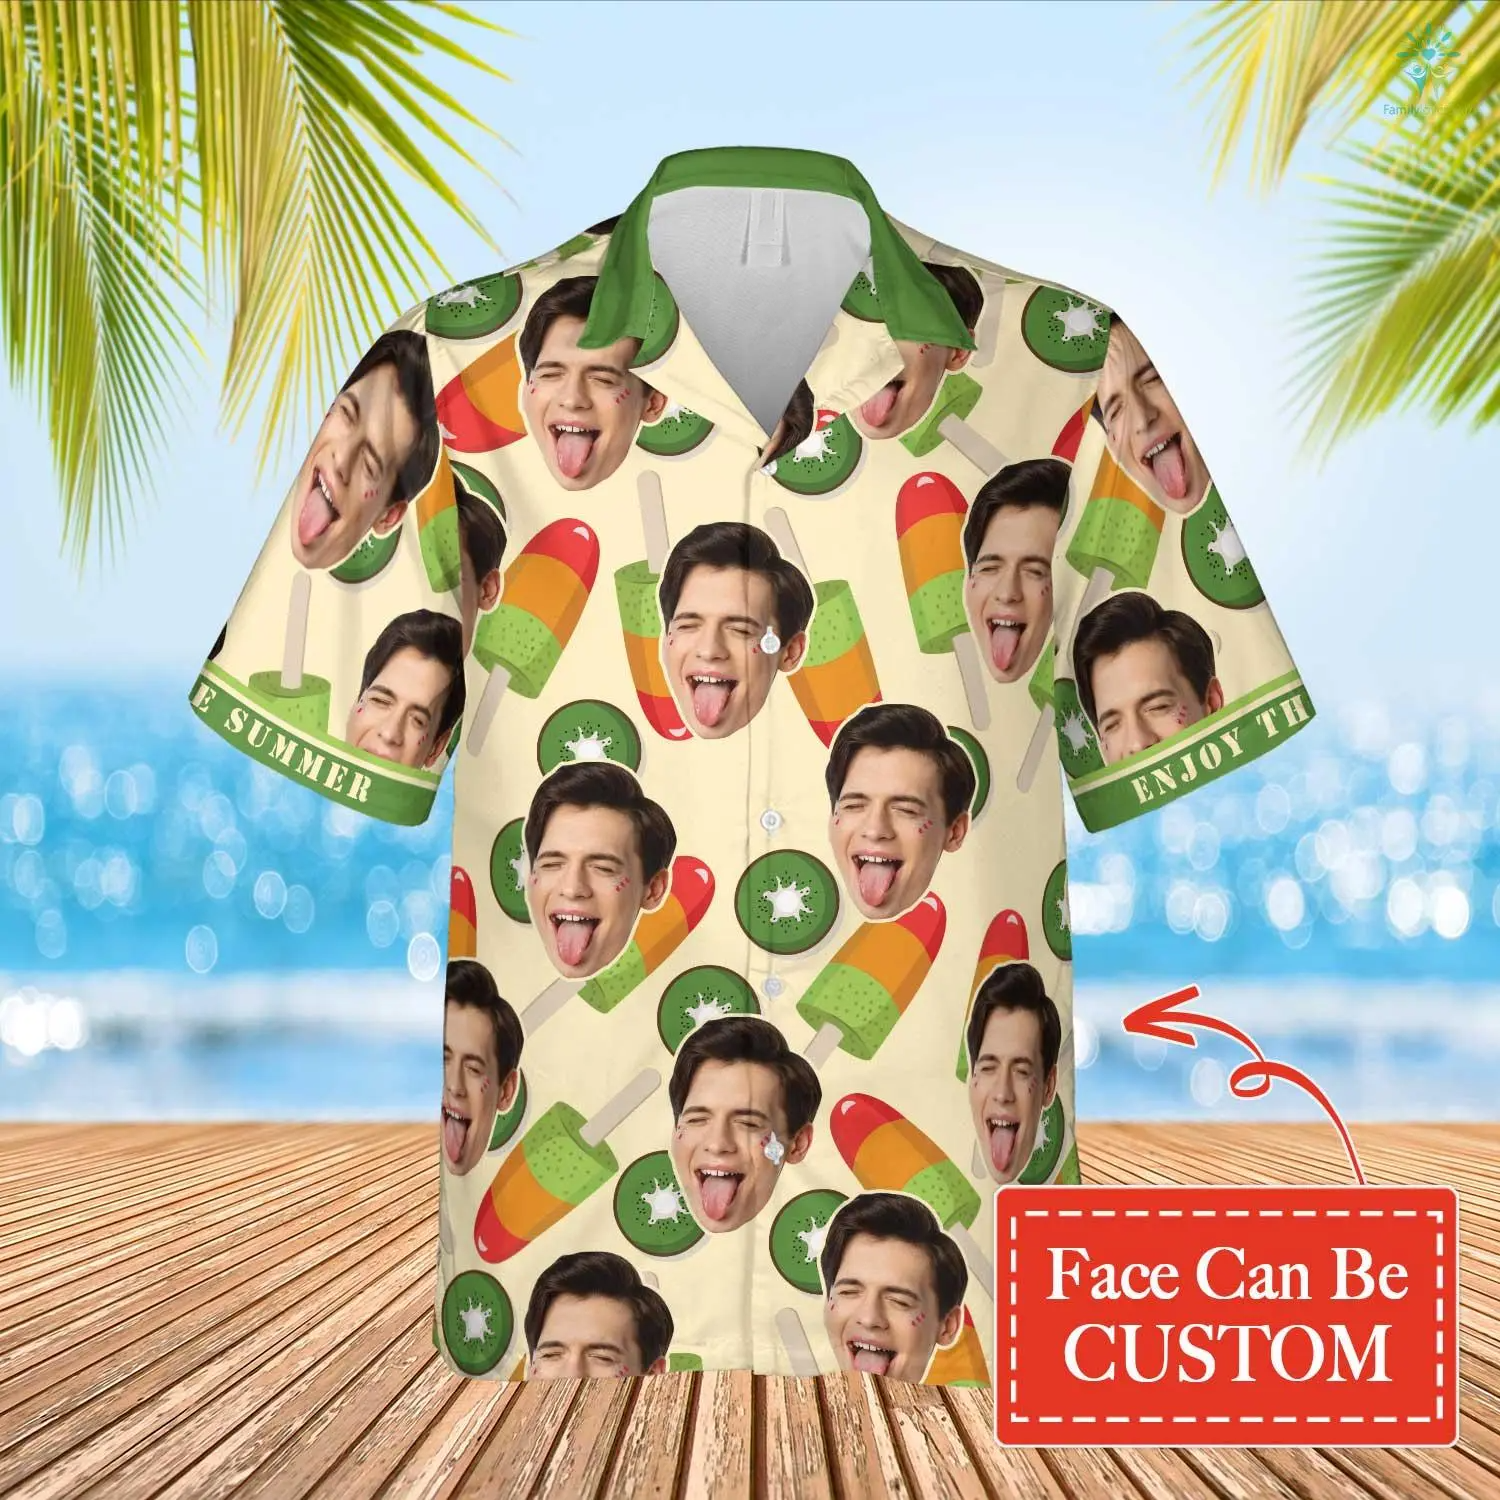 Kiwi Icream Hawaiian Funny Custom Face Image Summer Shirt Beach Hawaiian Shirt/ Gift for Him Her/ Enjoy the Summer